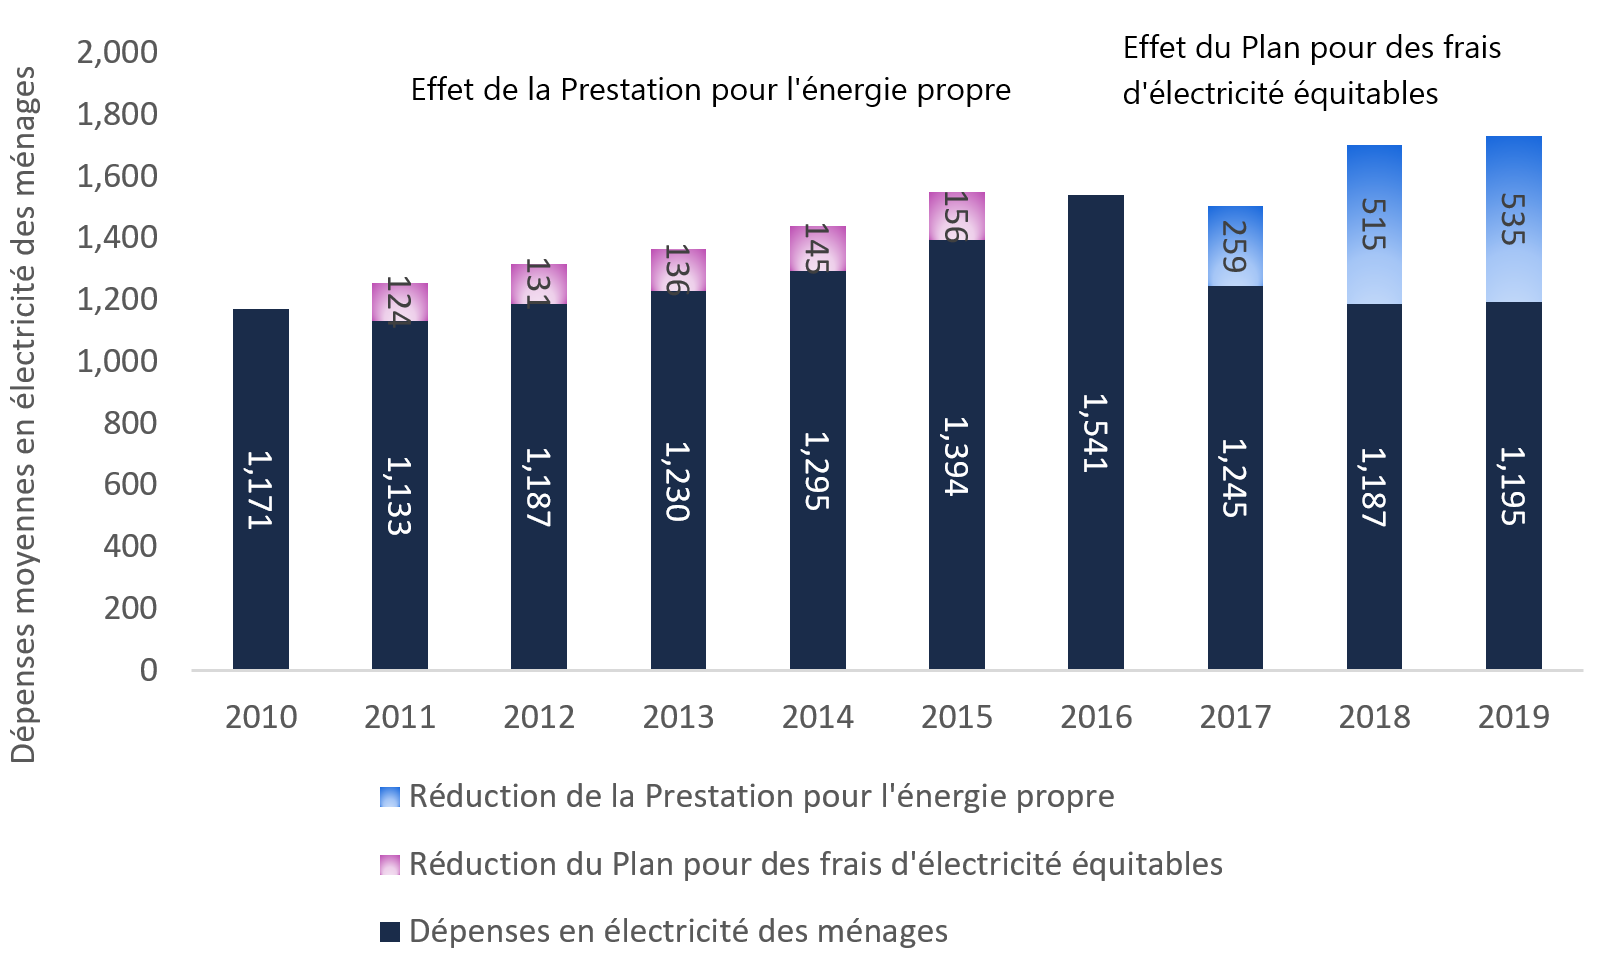 Effet des subventions au titre des coûts de l'électricité domestique sur les dépenses en électricité des ménages, 2010 à 2019